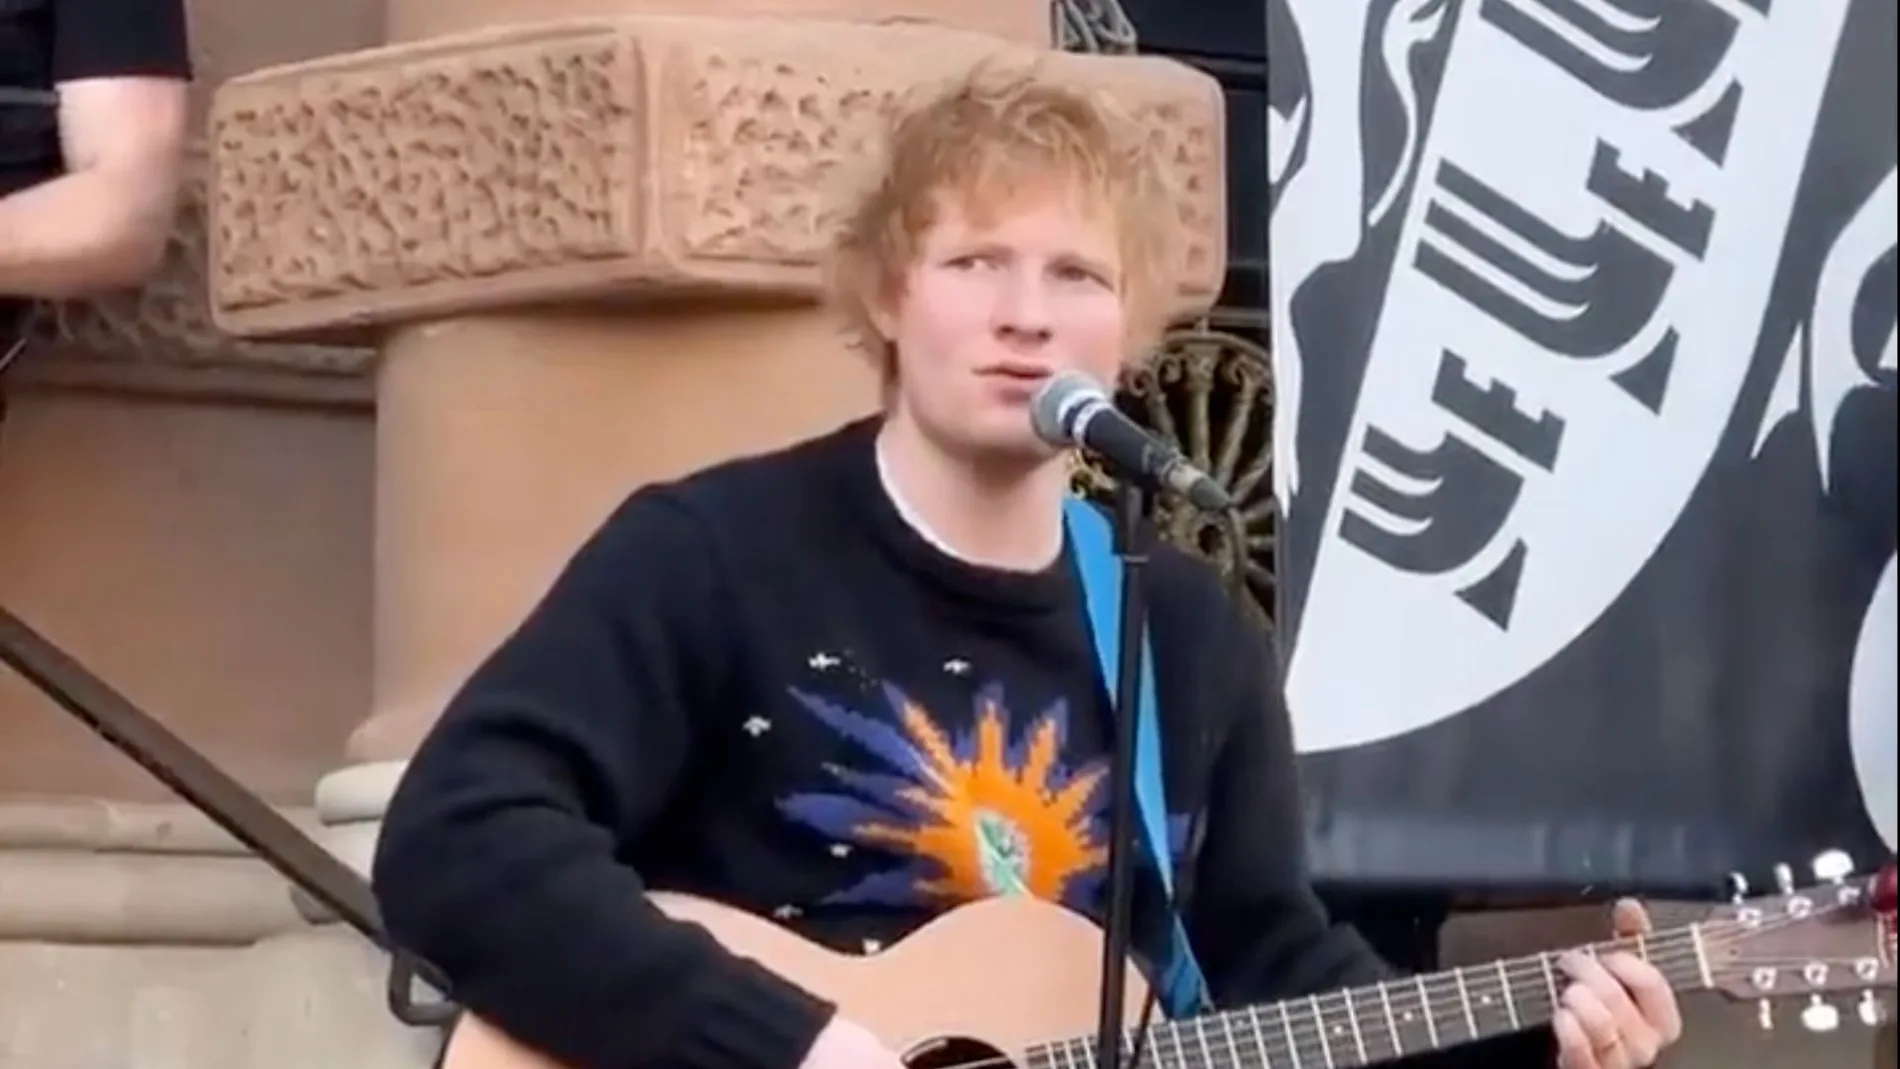 Ed Sheeran da un concierto acústico sorpresa en las calles de Inglaterra 